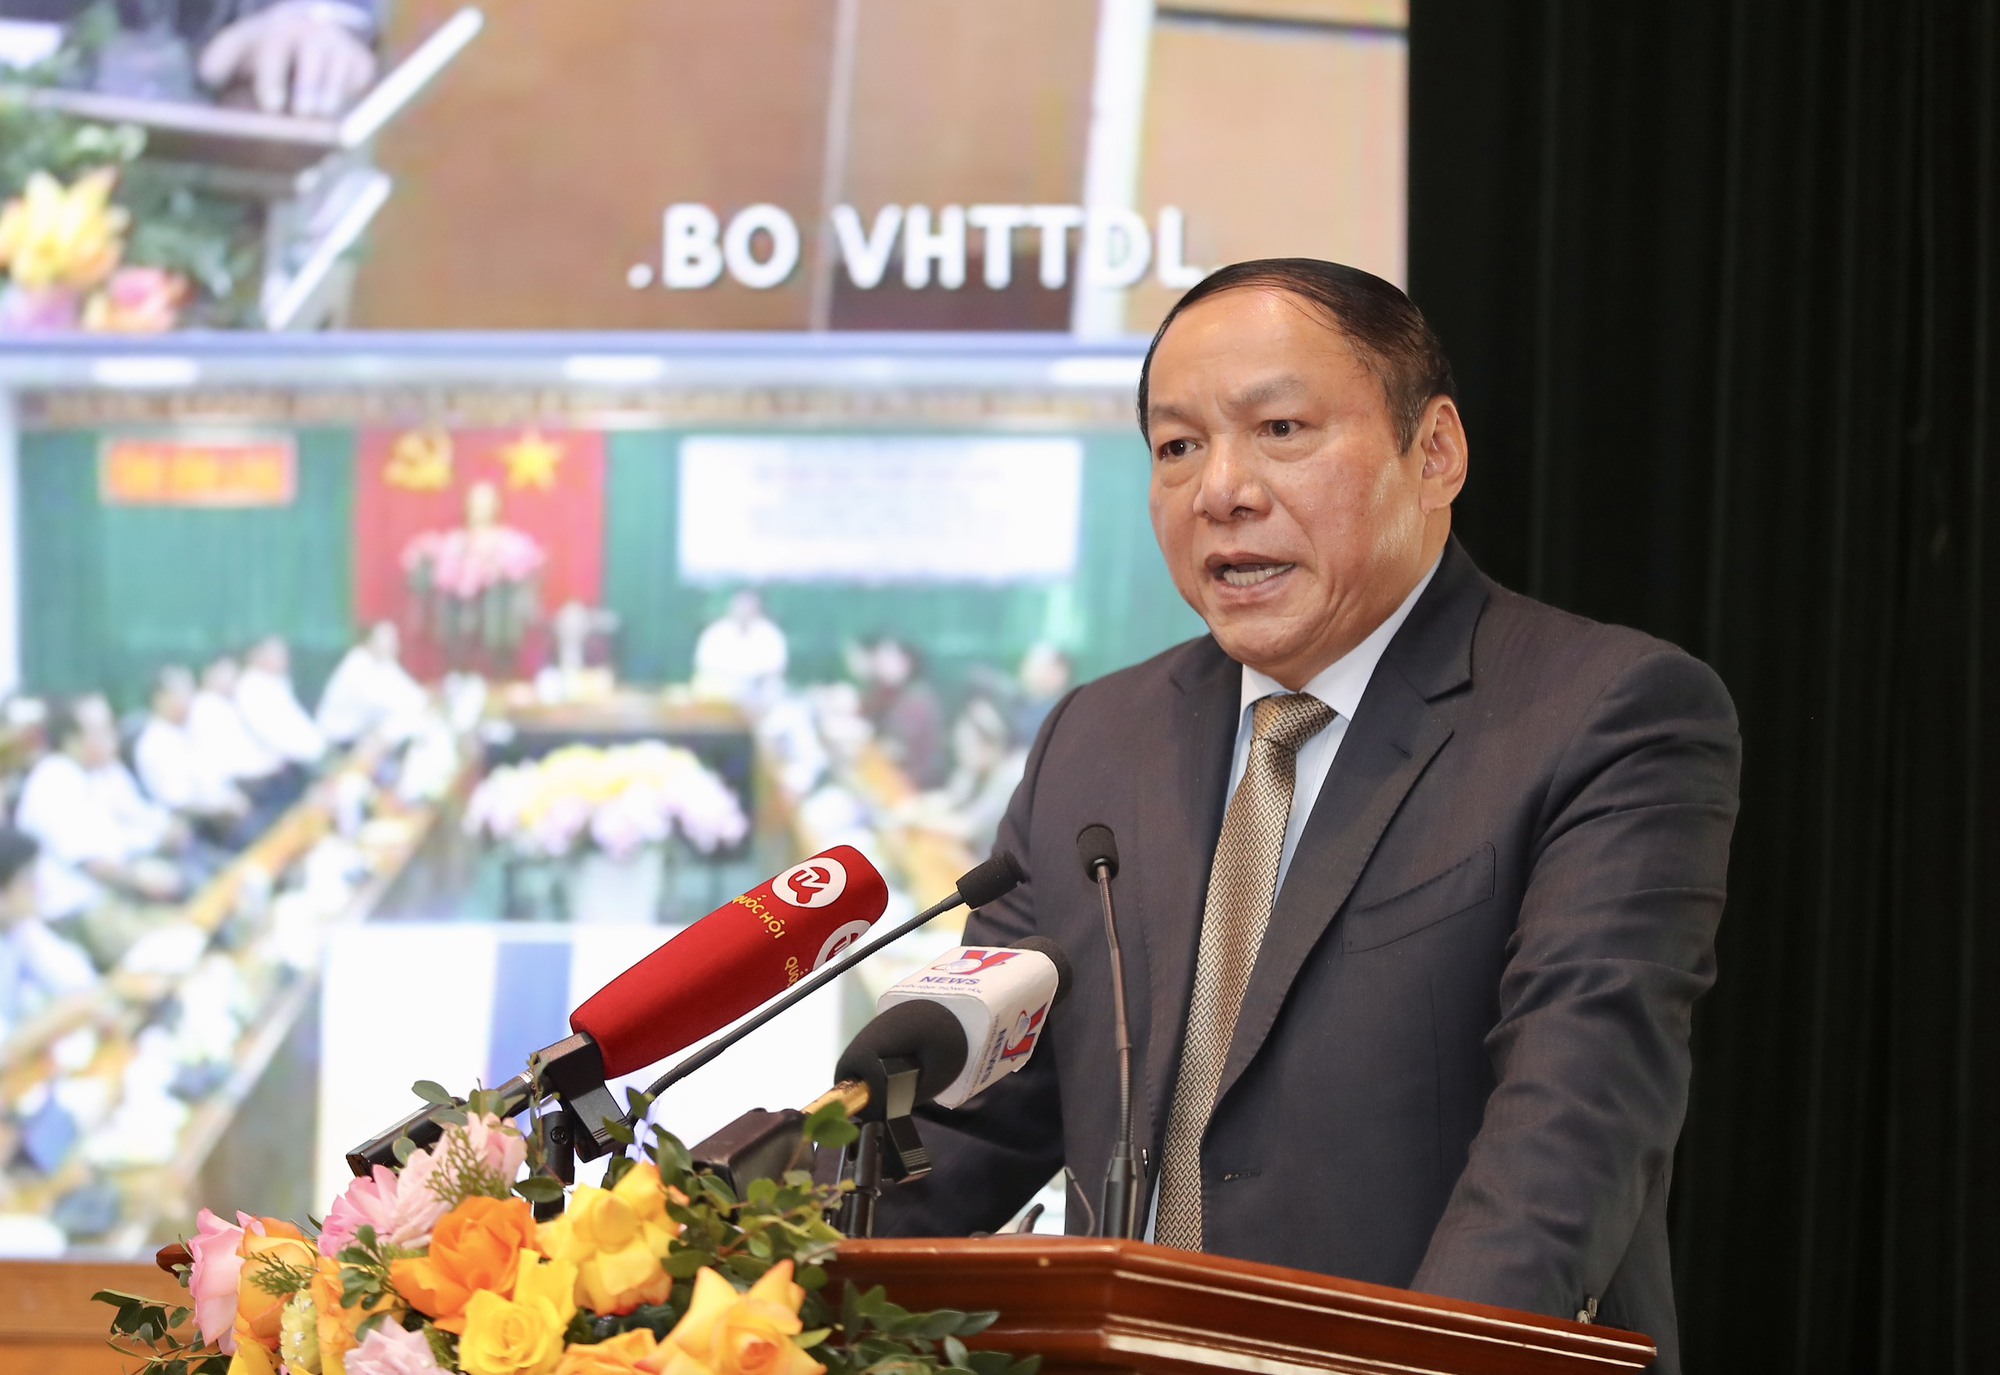 Bộ trưởng Nguyễn Văn Hùng: Cán bộ ngành Văn hóa cần nhẫn nại, "quả chín trên cây là quả chín dần dà"